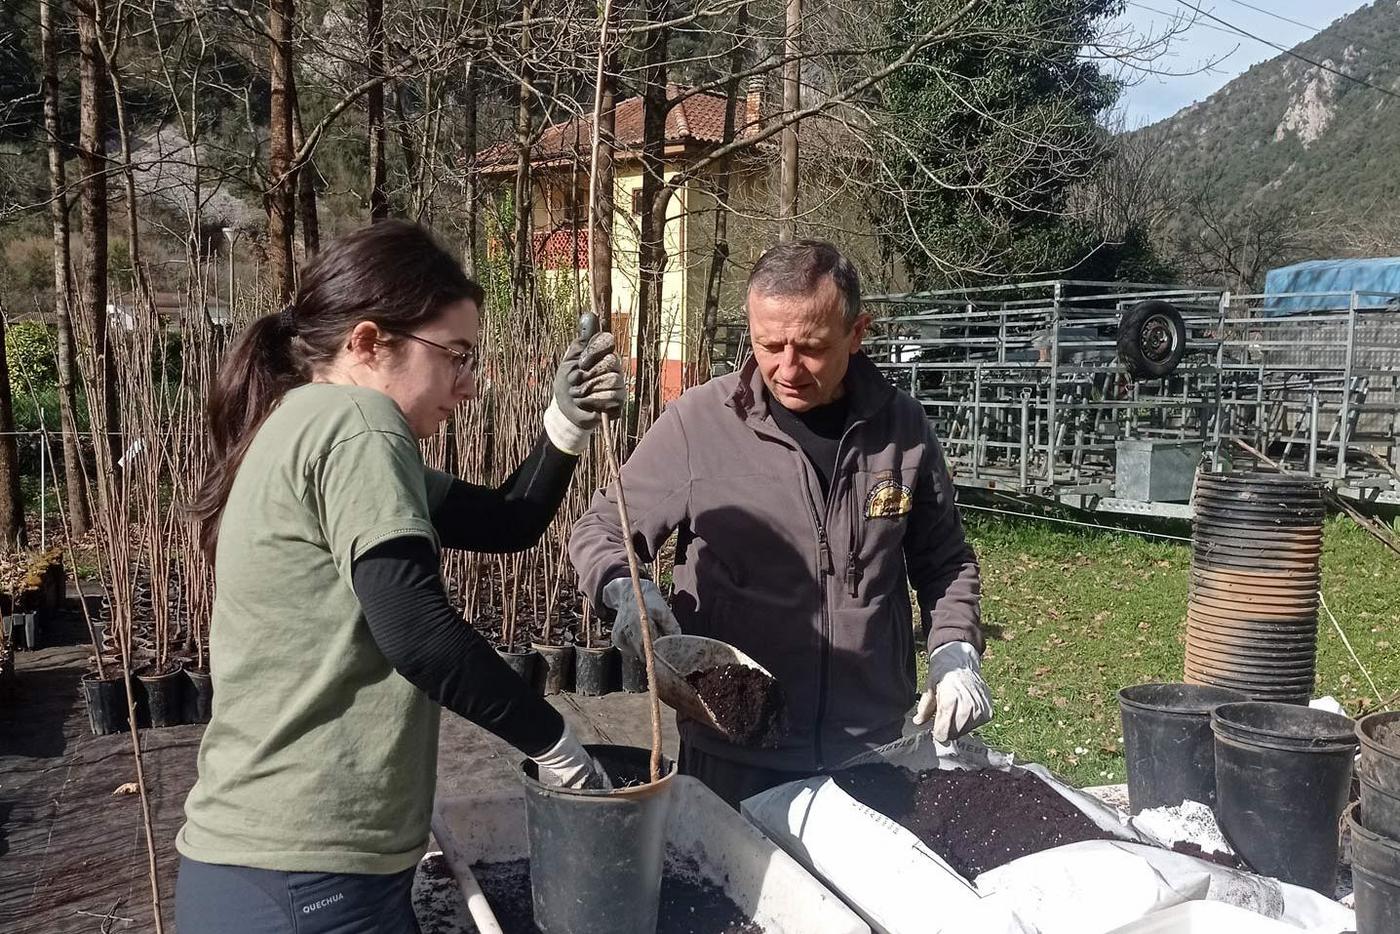 Fapas-Mitarbeiter  Monchu Magadan bereitet mit Freiwilligen Obstbäume für die Auspflanzung vor (Kampagne Plantaciones Gourmet). Dadurch sollen Bären von Siedlungen in der Provinz León fern gehalten und Konflikte mit der Lokalbevölkerung vermieden werden.